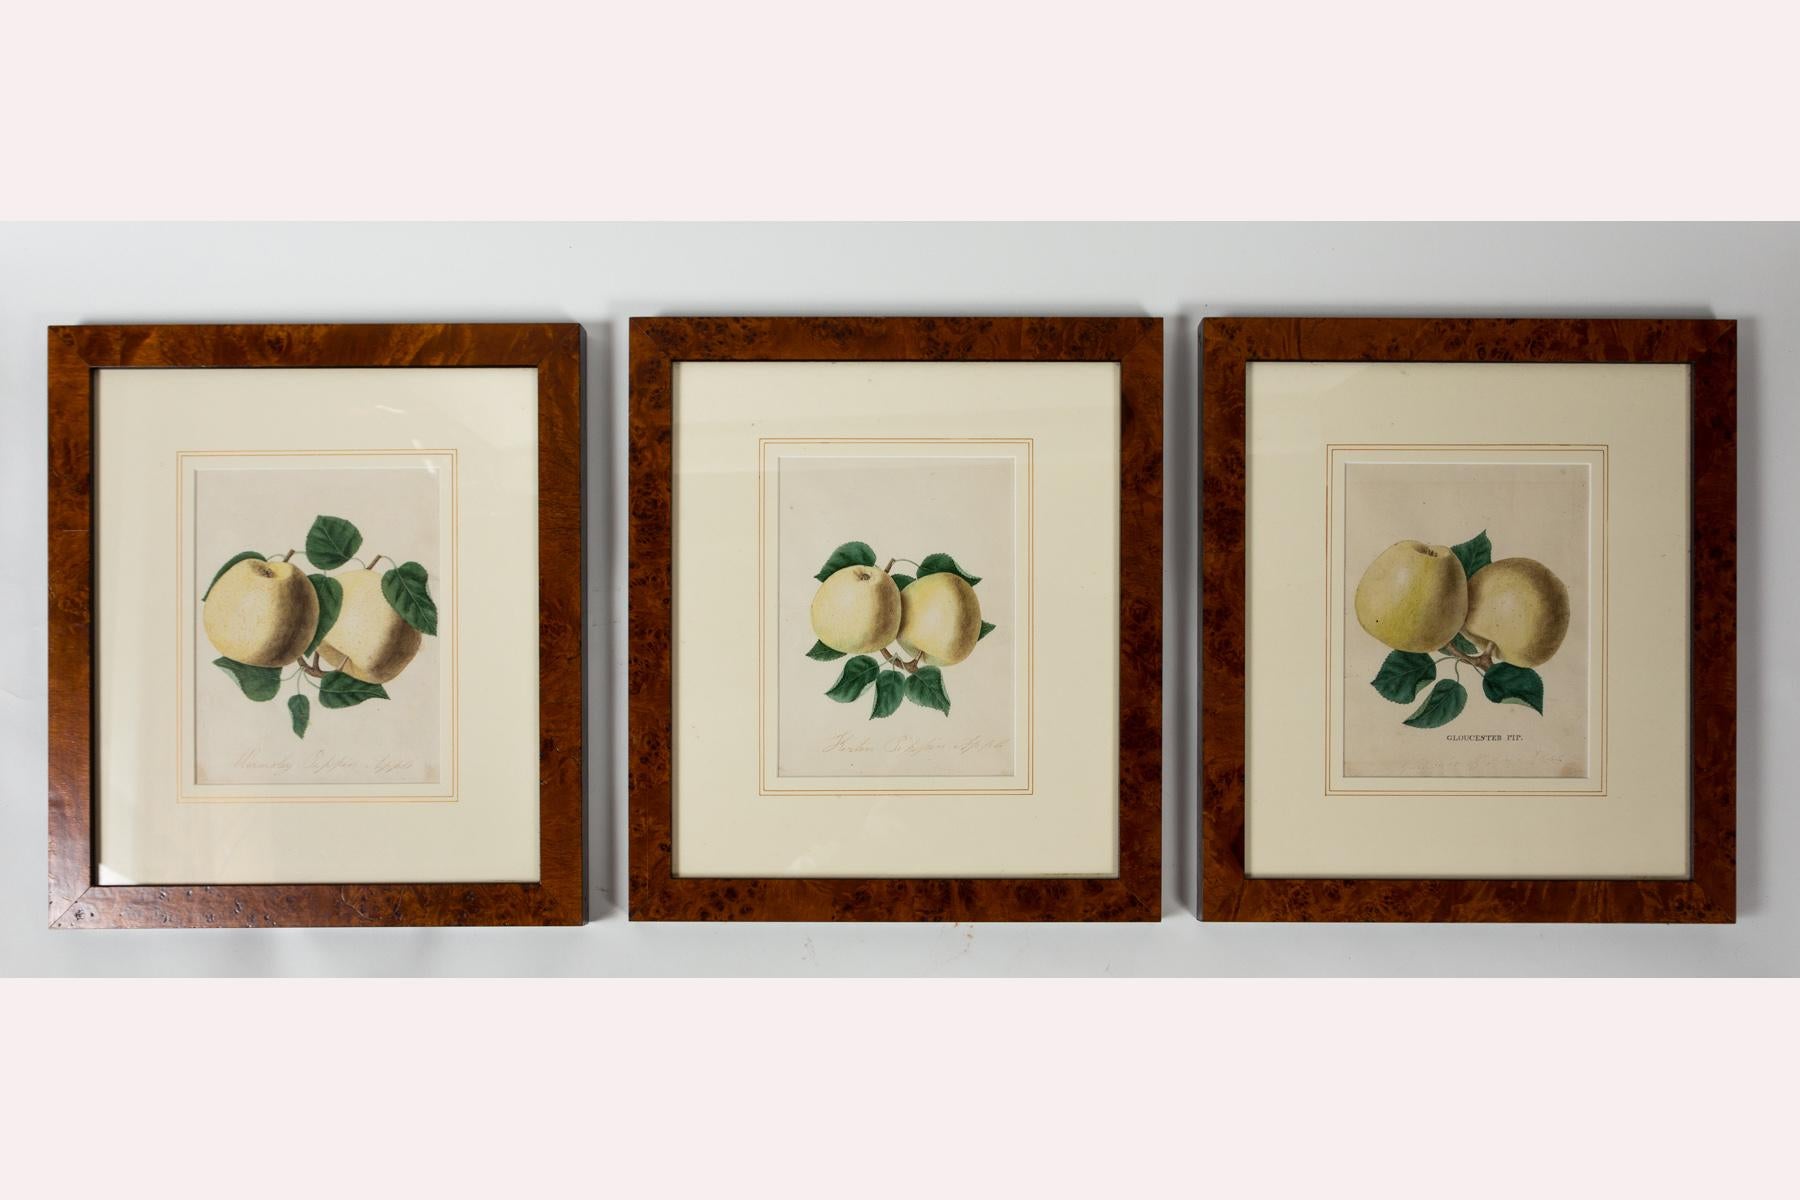 Ensemble de 3 lithographies d'étude de la pomme, début du 20e siècle. Études coloriées à la main de variétés de pommes. Encadré professionnellement et muni d'un passe-partout.